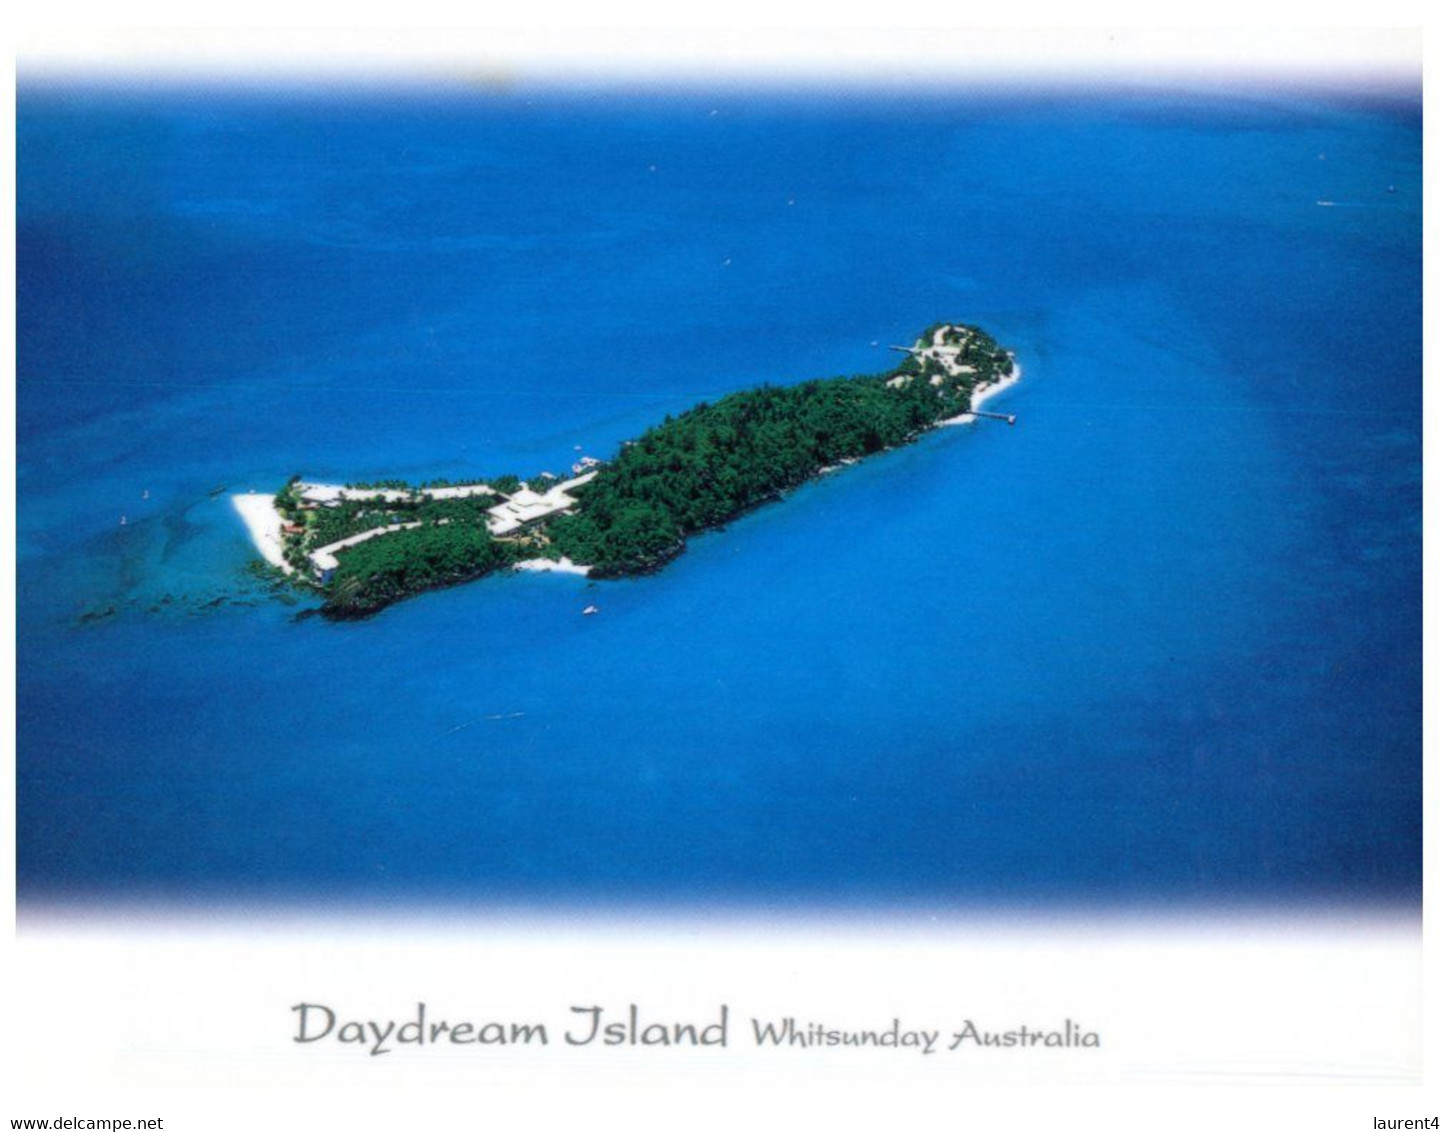 (NN 12) Australia - QLD - Daydream Island - Great Barrier Reef